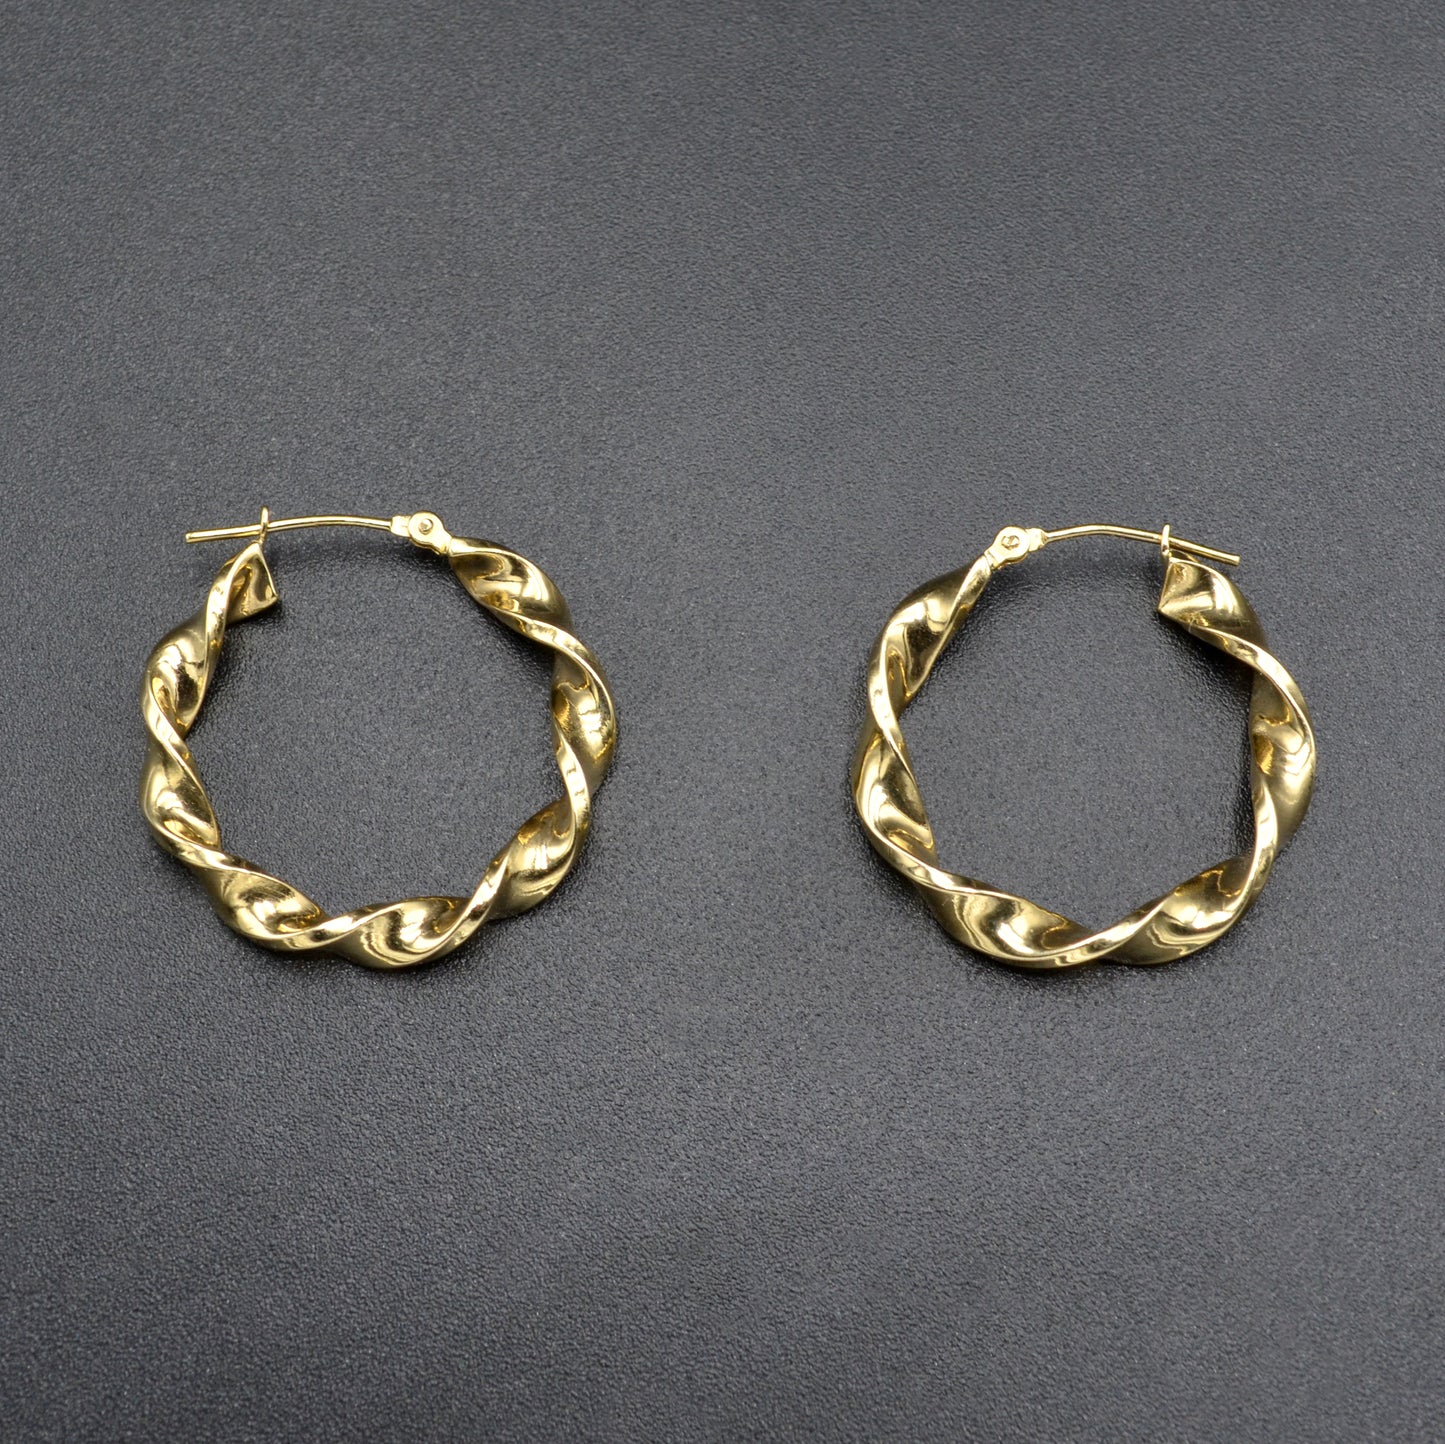 Vintage 14k Gold Twisted Hoop Earrings